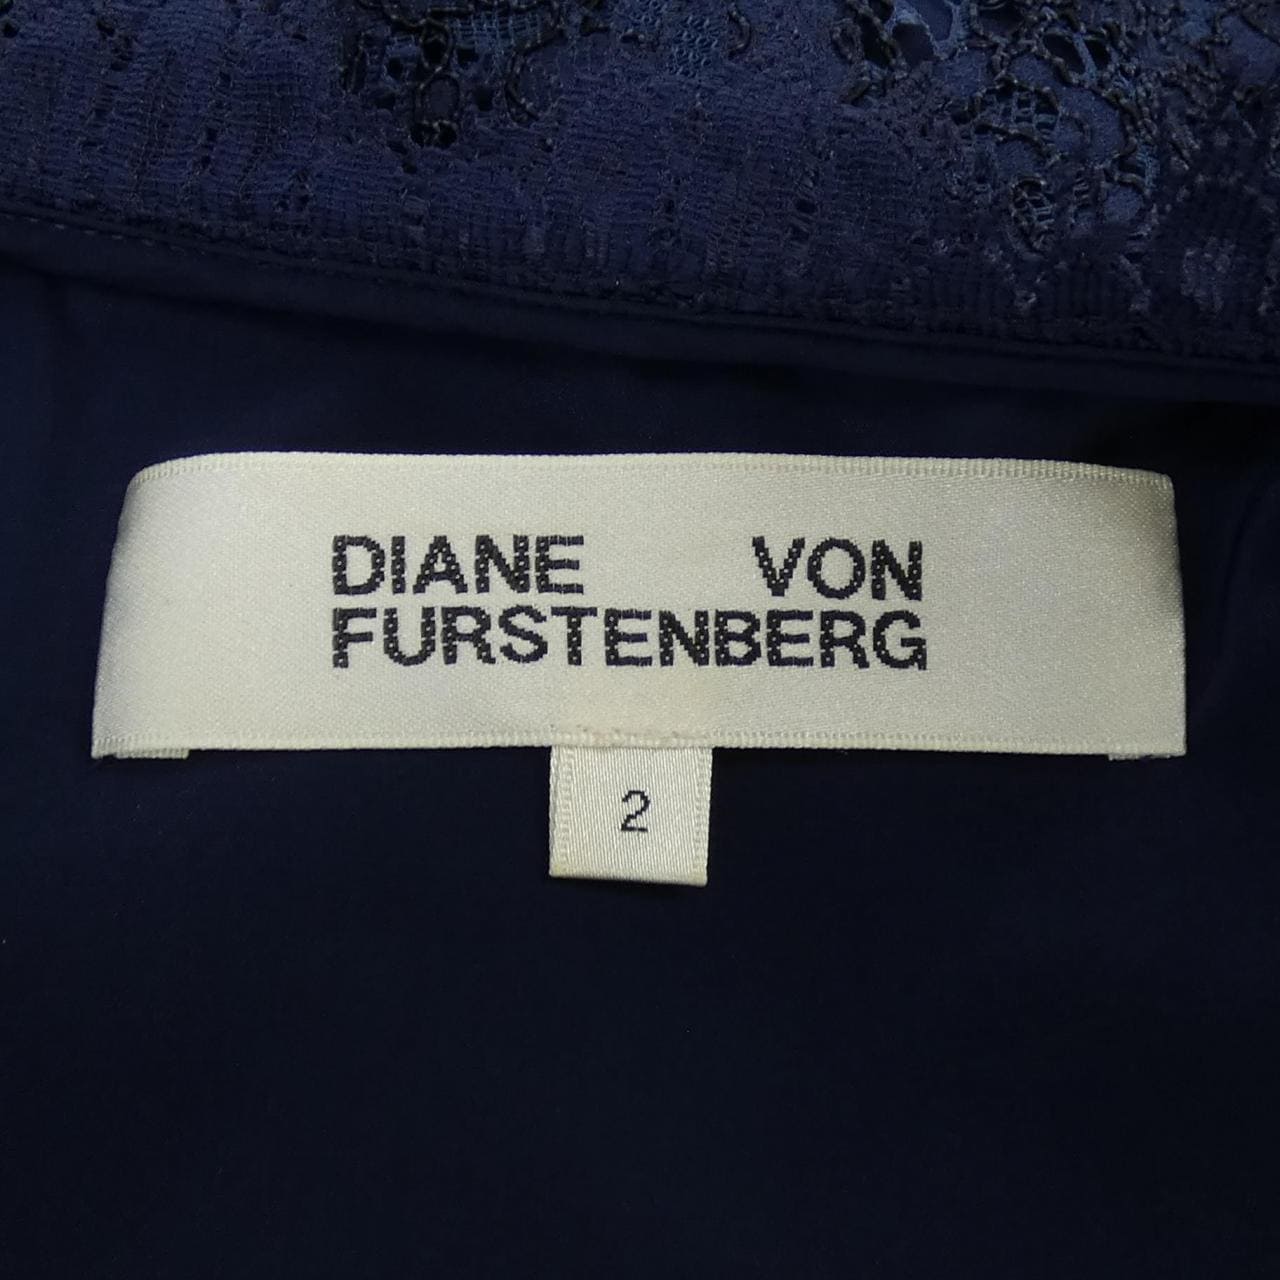 Diane von Fastenberg DIANE vonFURSTENBERG連衣裙